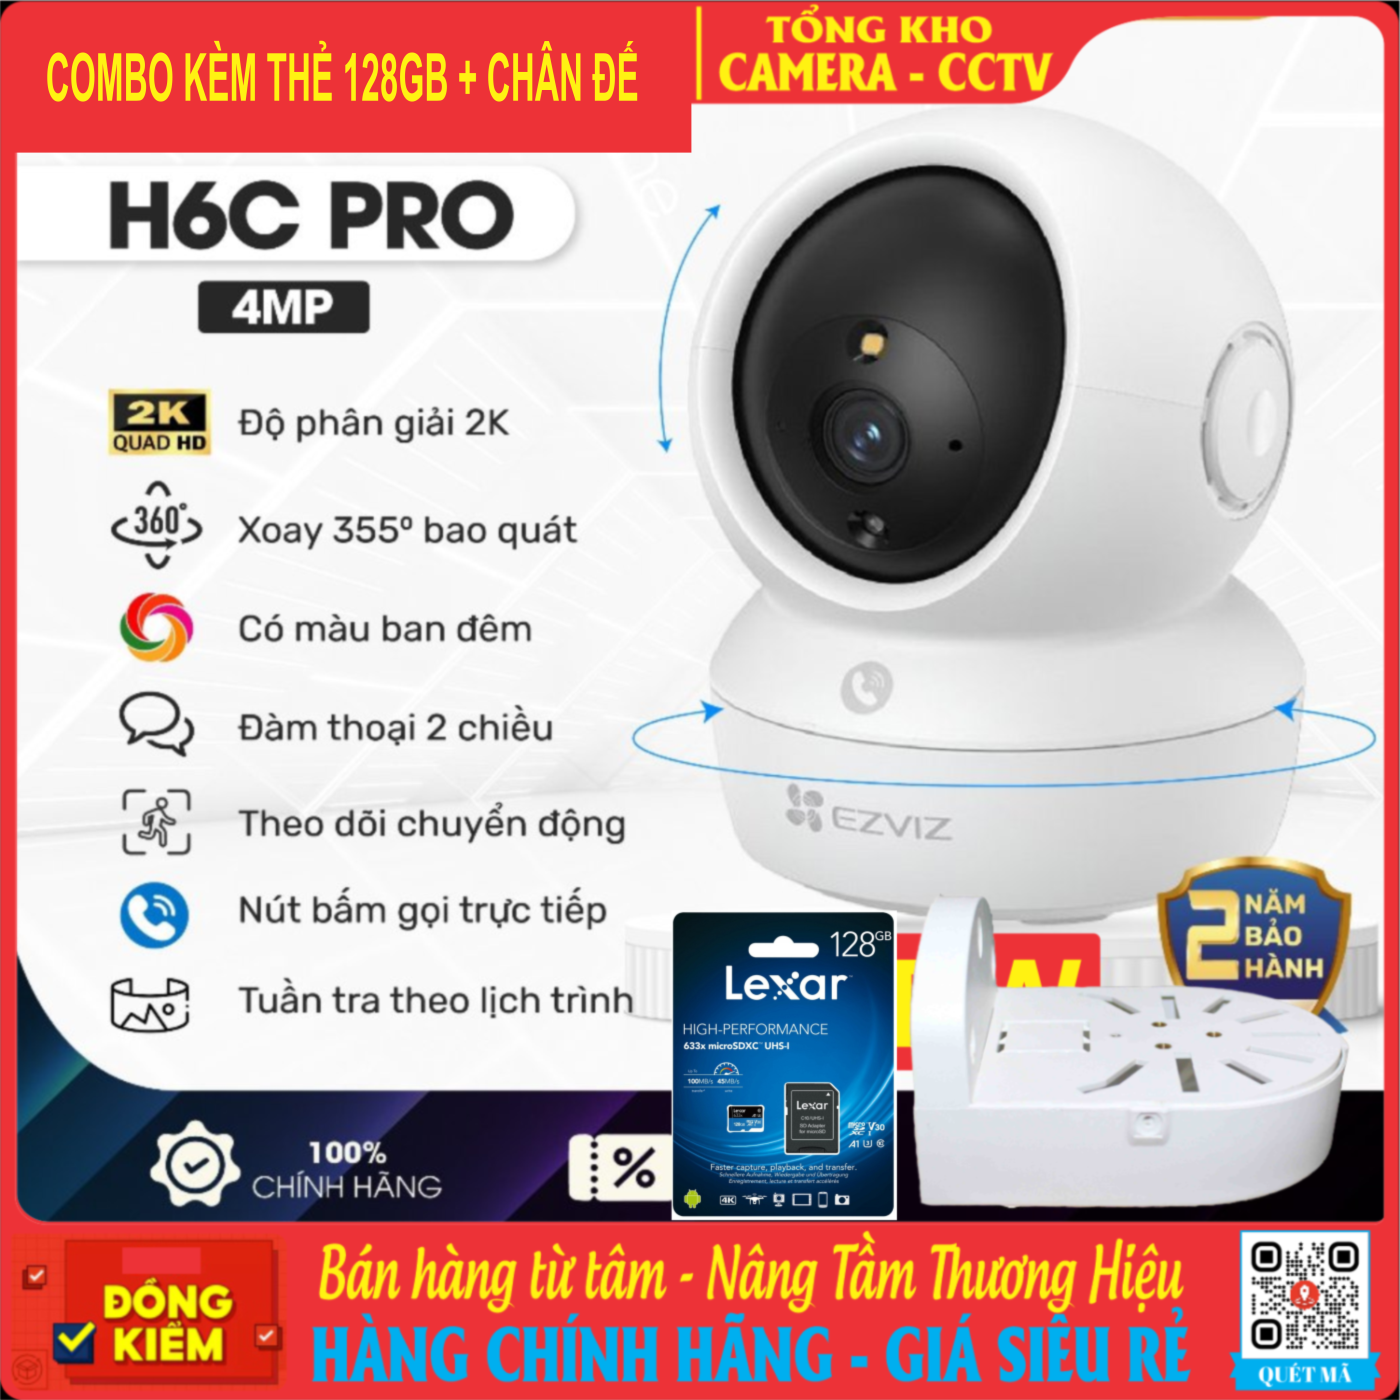 Combo Camera EZViz H6C PRO 4MP + Thẻ 128GB LEXAR + Chân Đế Chữ L ( Chính Hãng Bảo Hành 2 Năm)